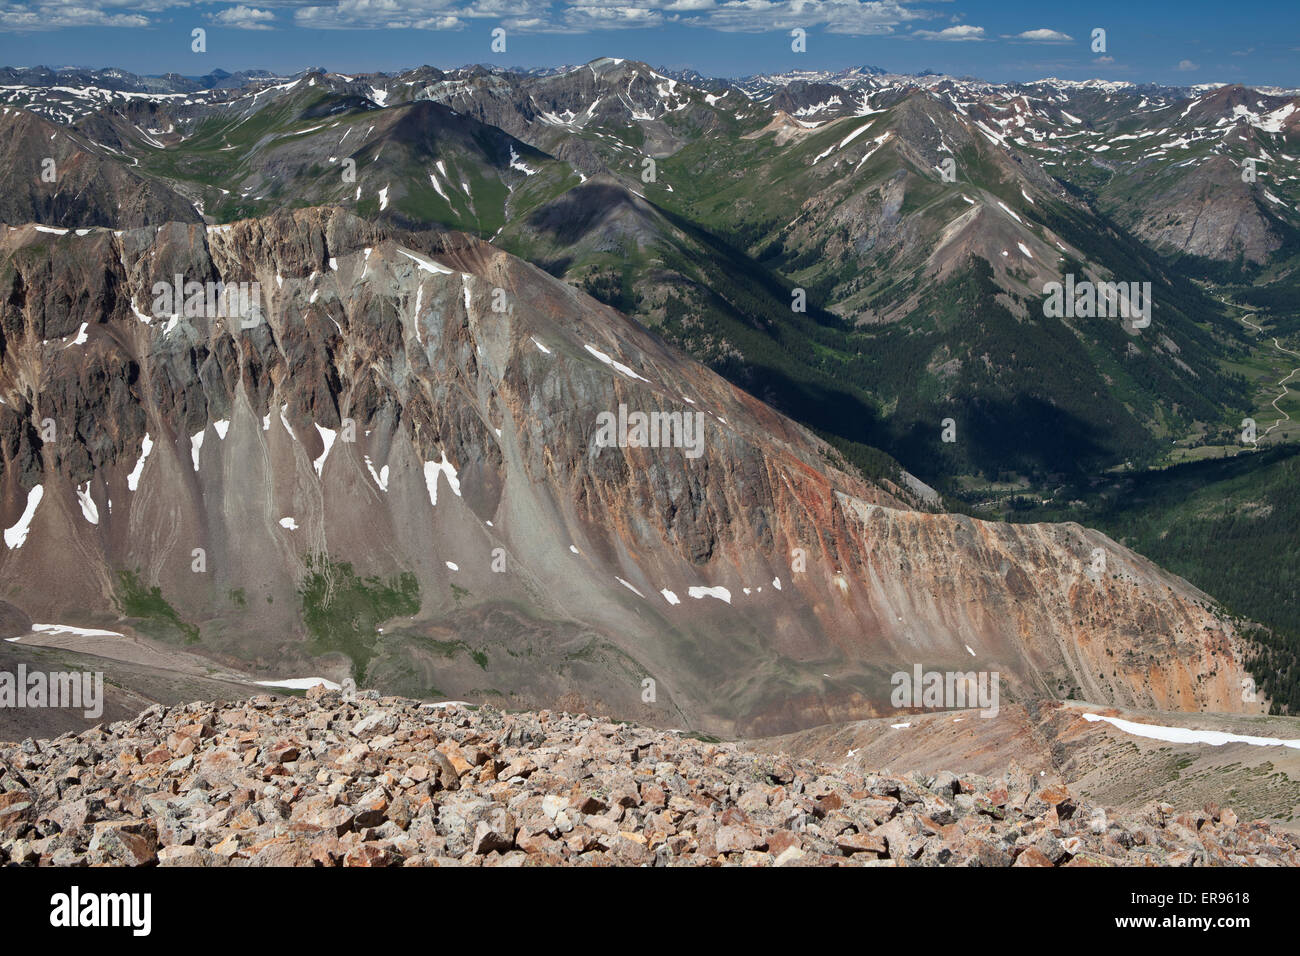 Le Red Cloud Peak Wilderness Zone d'étude. La zone contient 30 sommets de montagnes, plus de 13 000 pieds d'altitude et deux pics de plus de 14 000 pieds. Banque D'Images